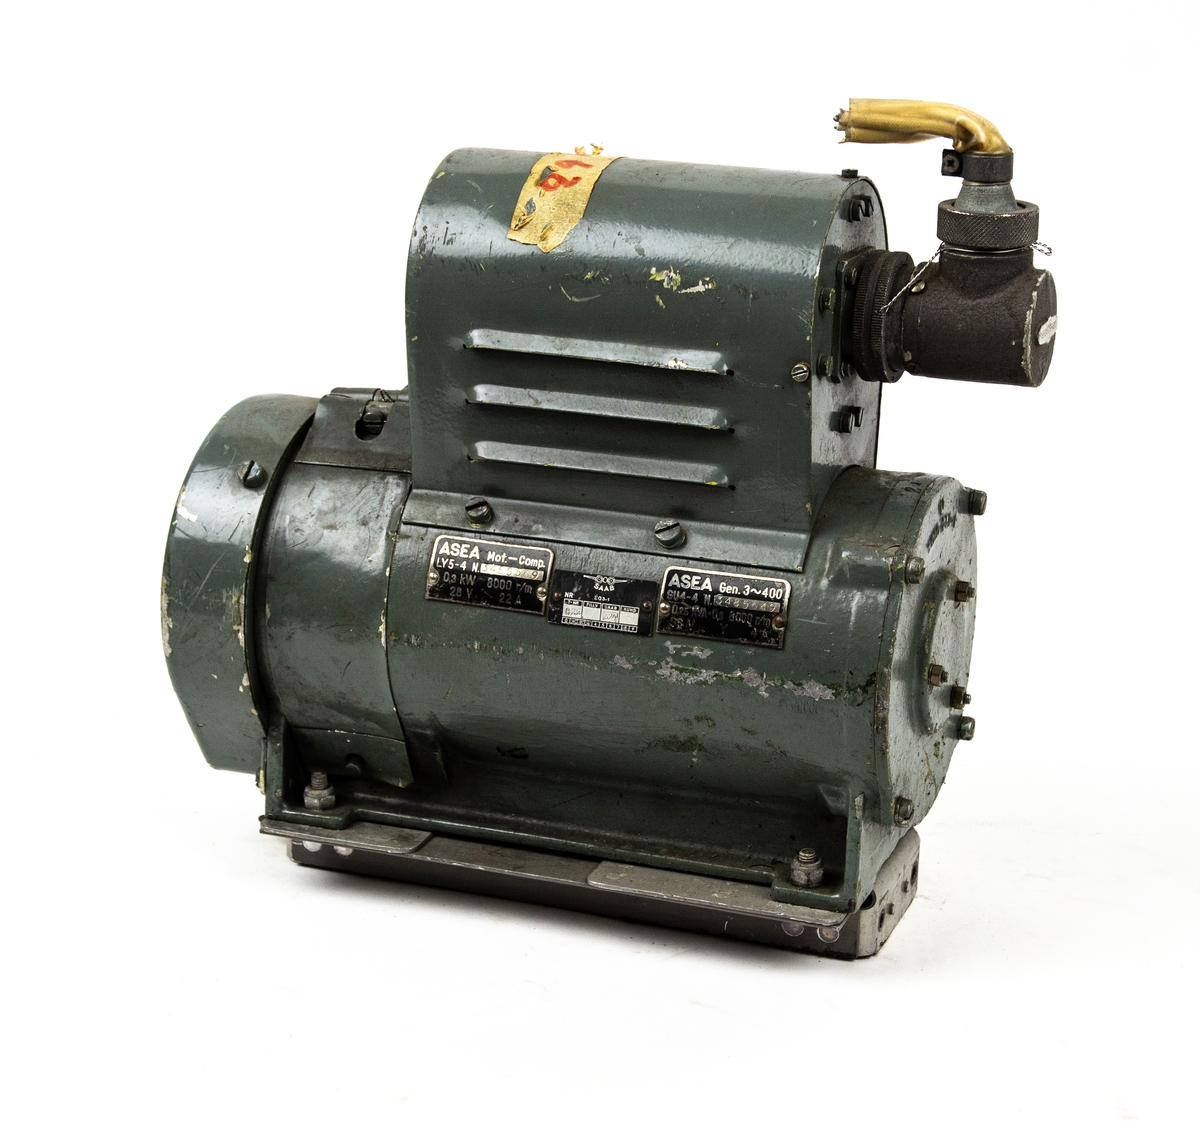 Generator ASEA, typ GU4-4.
